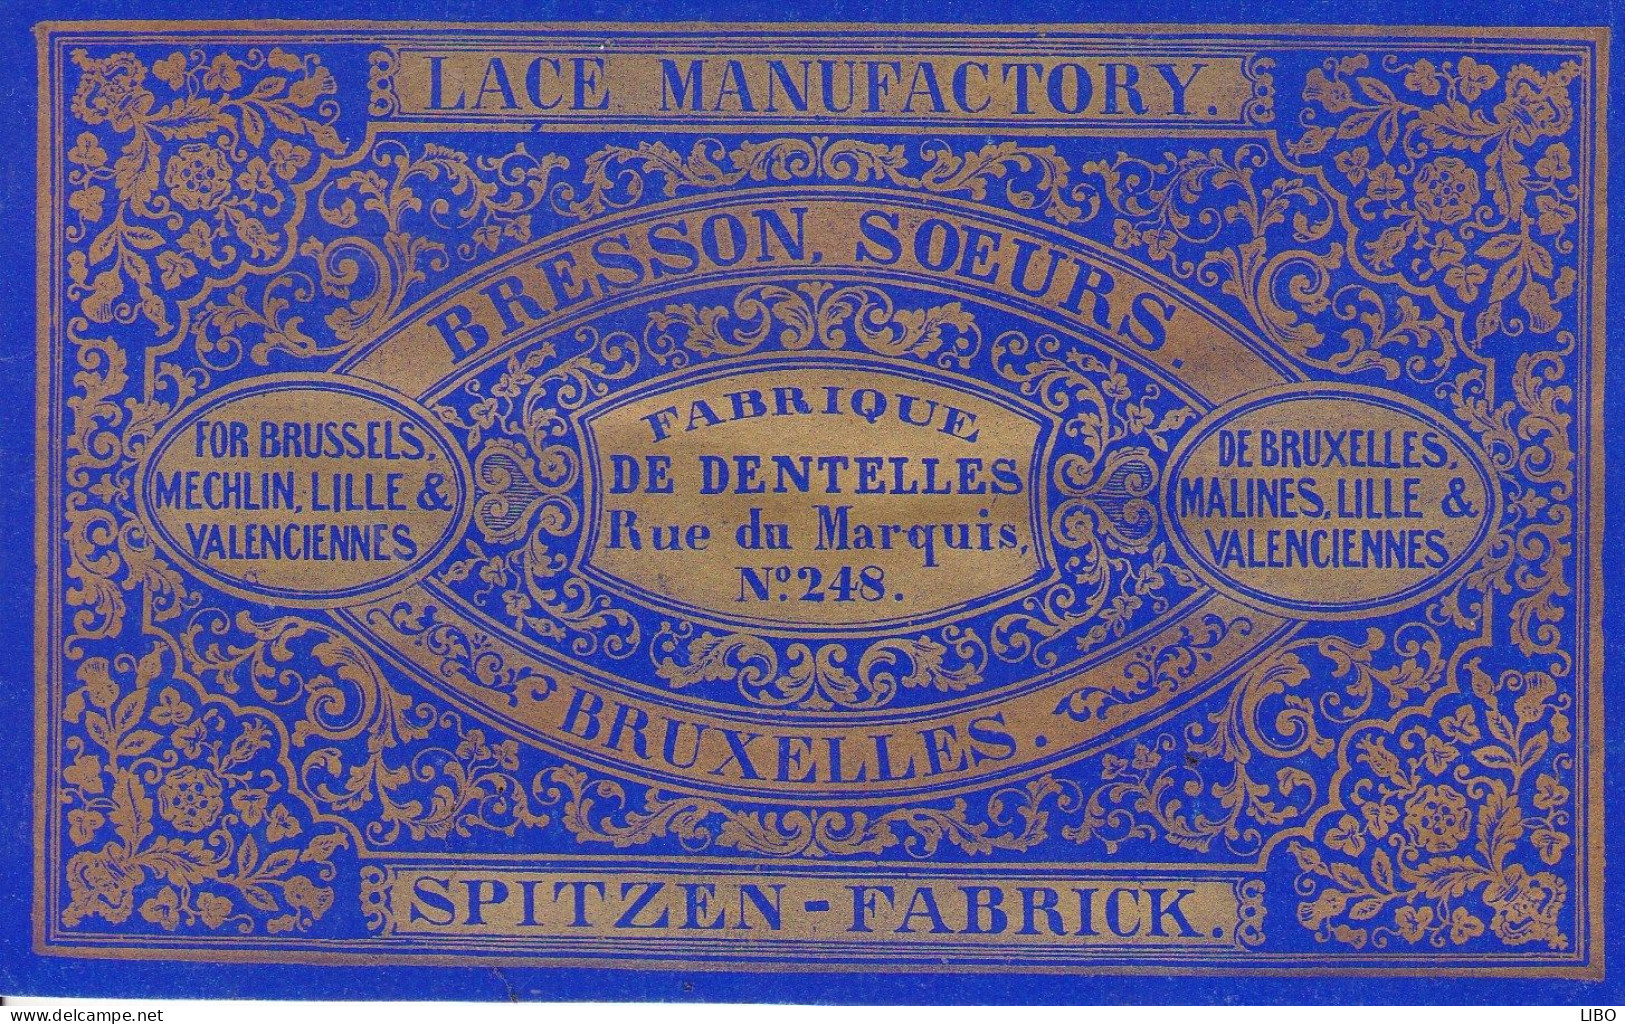 Fabrique De Dentelles SPITZEN-FABRICK BRESSON Soeurs Bruxelles Rue Du Marquis BRUXELLES LILLE VALENCIENNES C. 1860 - Visitekaartjes